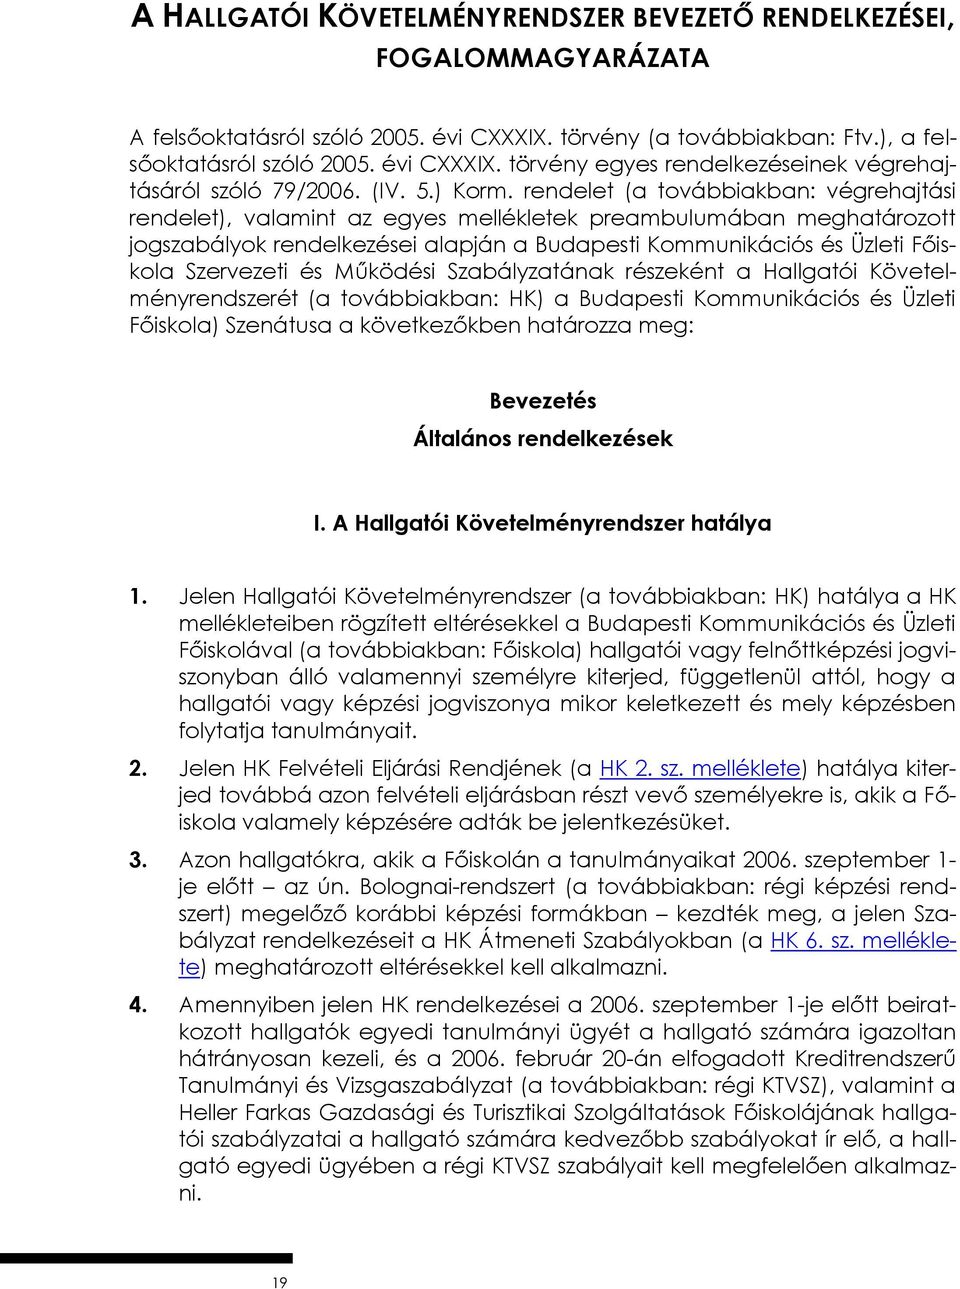 rendelet (a továbbiakban: végrehajtási rendelet), valamint az egyes mellékletek preambulumában meghatározott jogszabályok rendelkezései alapján a Budapesti Kommunikációs és Üzleti Főiskola Szervezeti